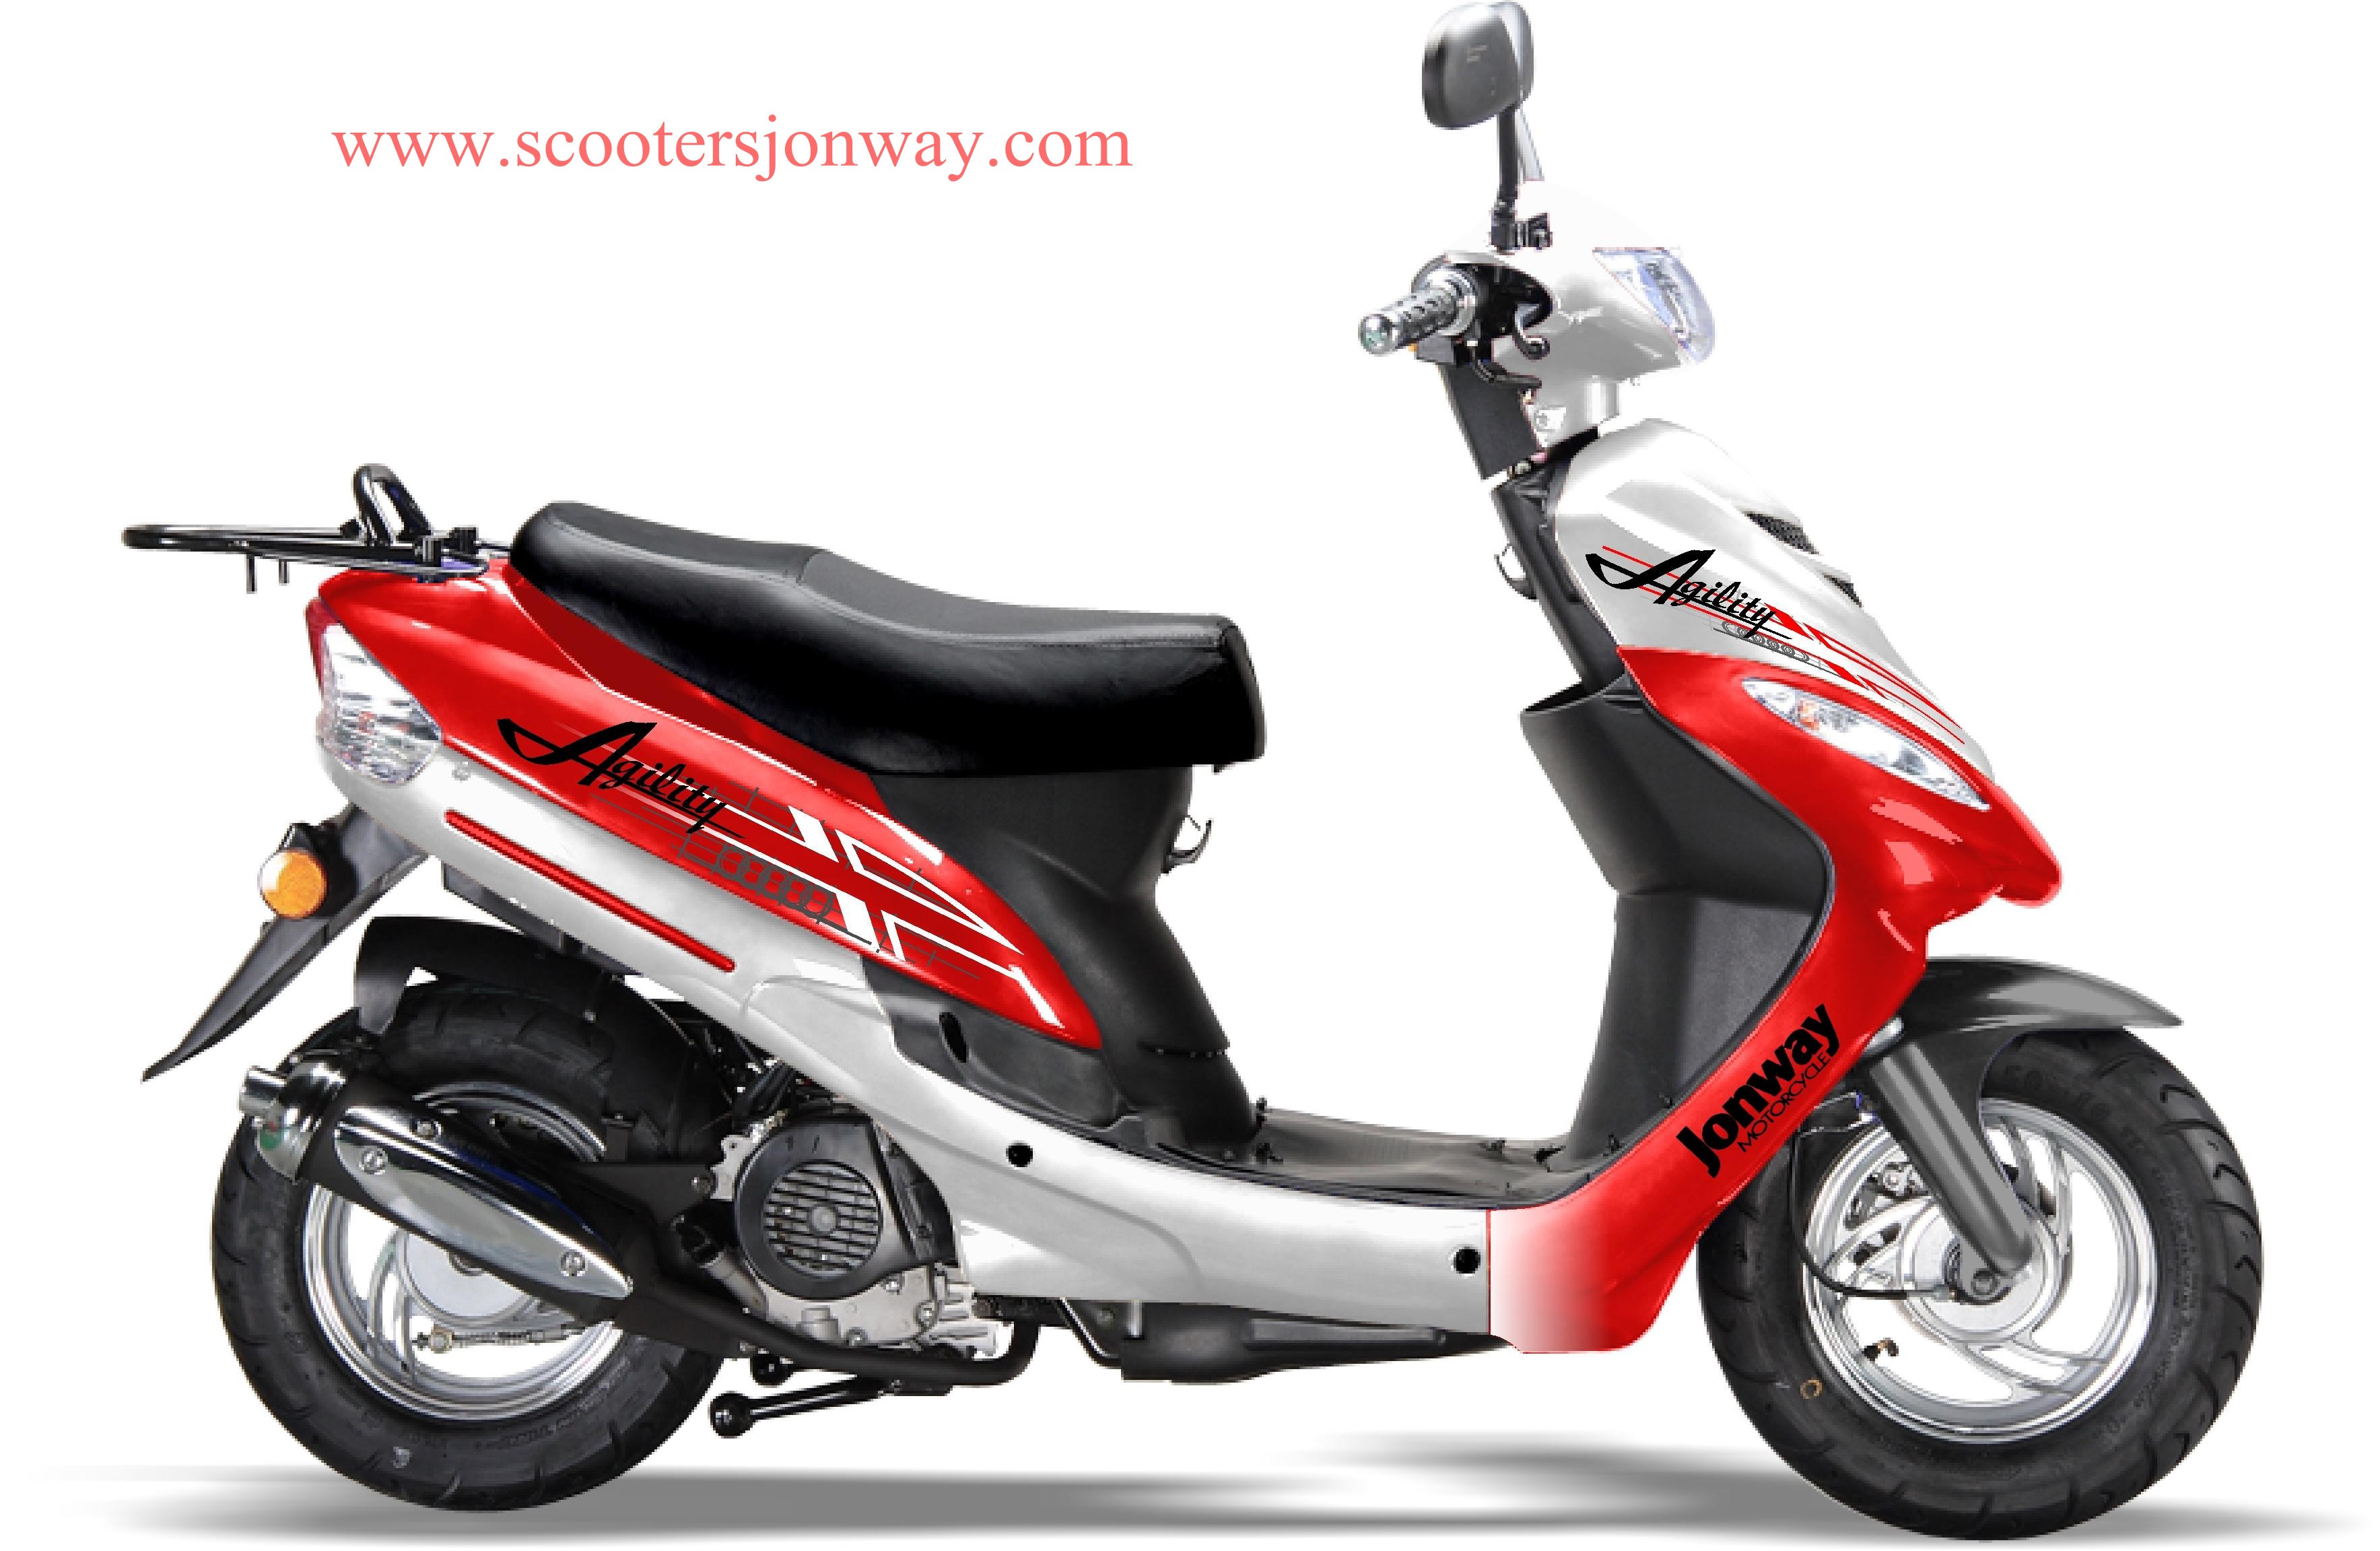 Pièces détachées pour scooter chinois 50cc, 125cc à 4 temps - LANRONG  INTERNATIONAL